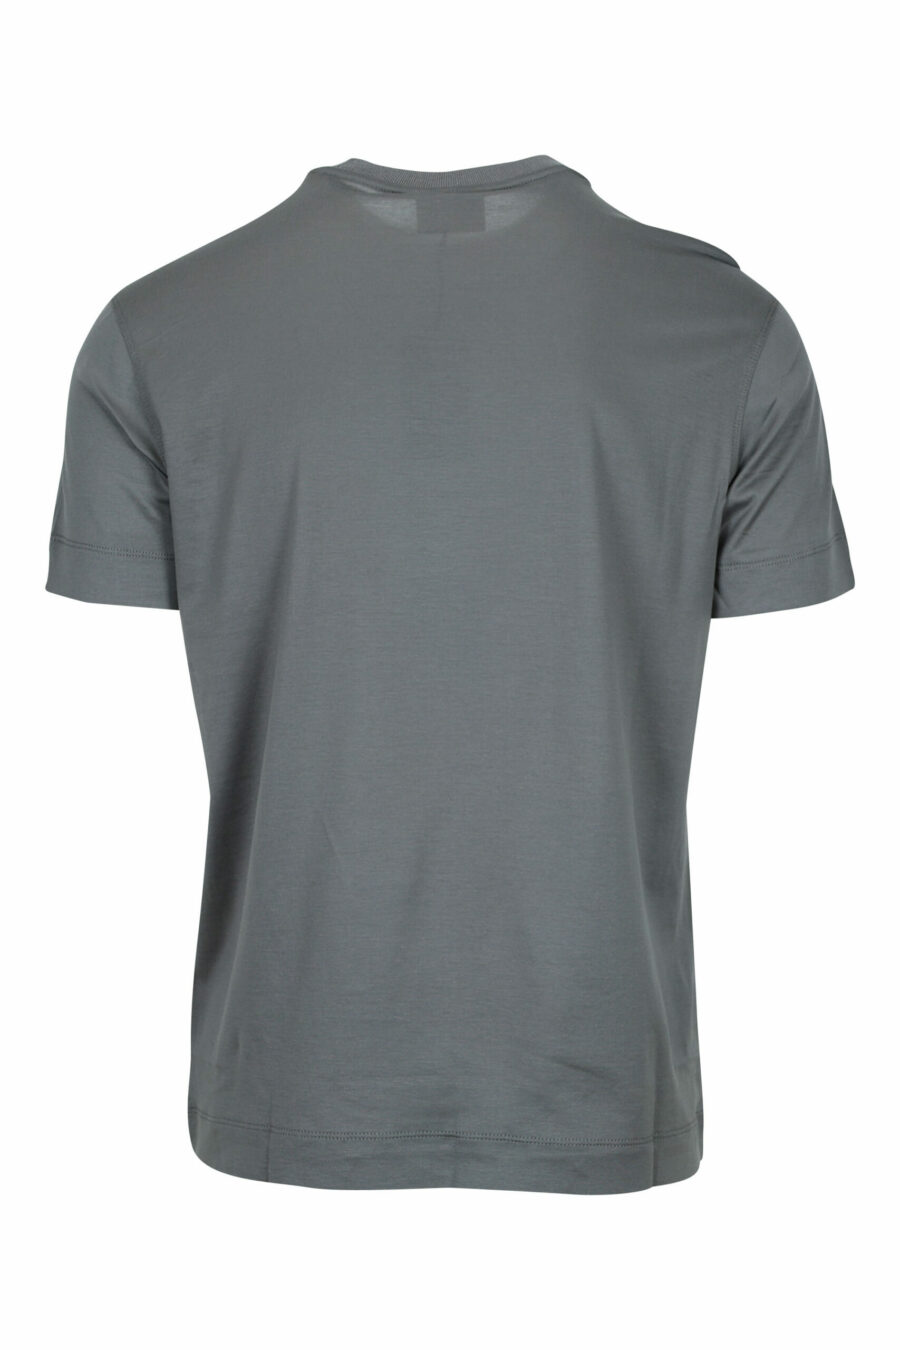 T-shirt cinzenta com maxilogo "emporio" - 8058947987238 1 à escala